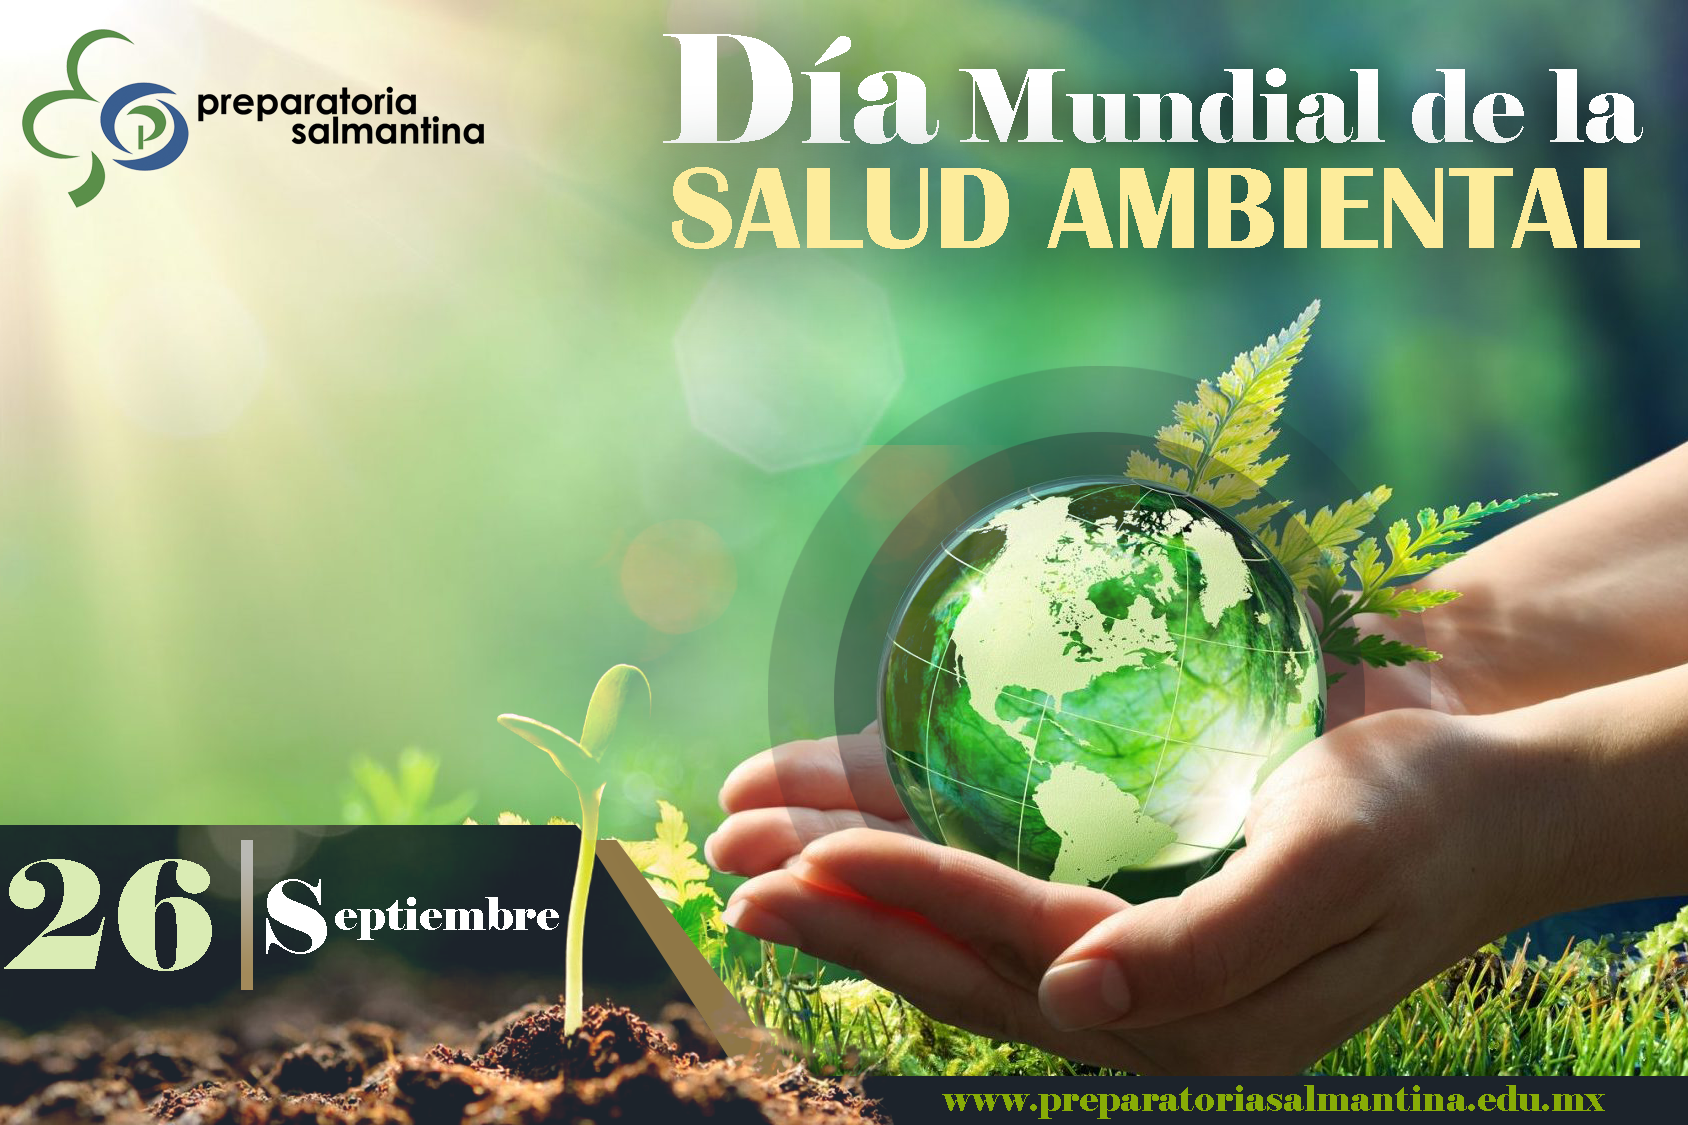 Día mundial de la salud ambiental